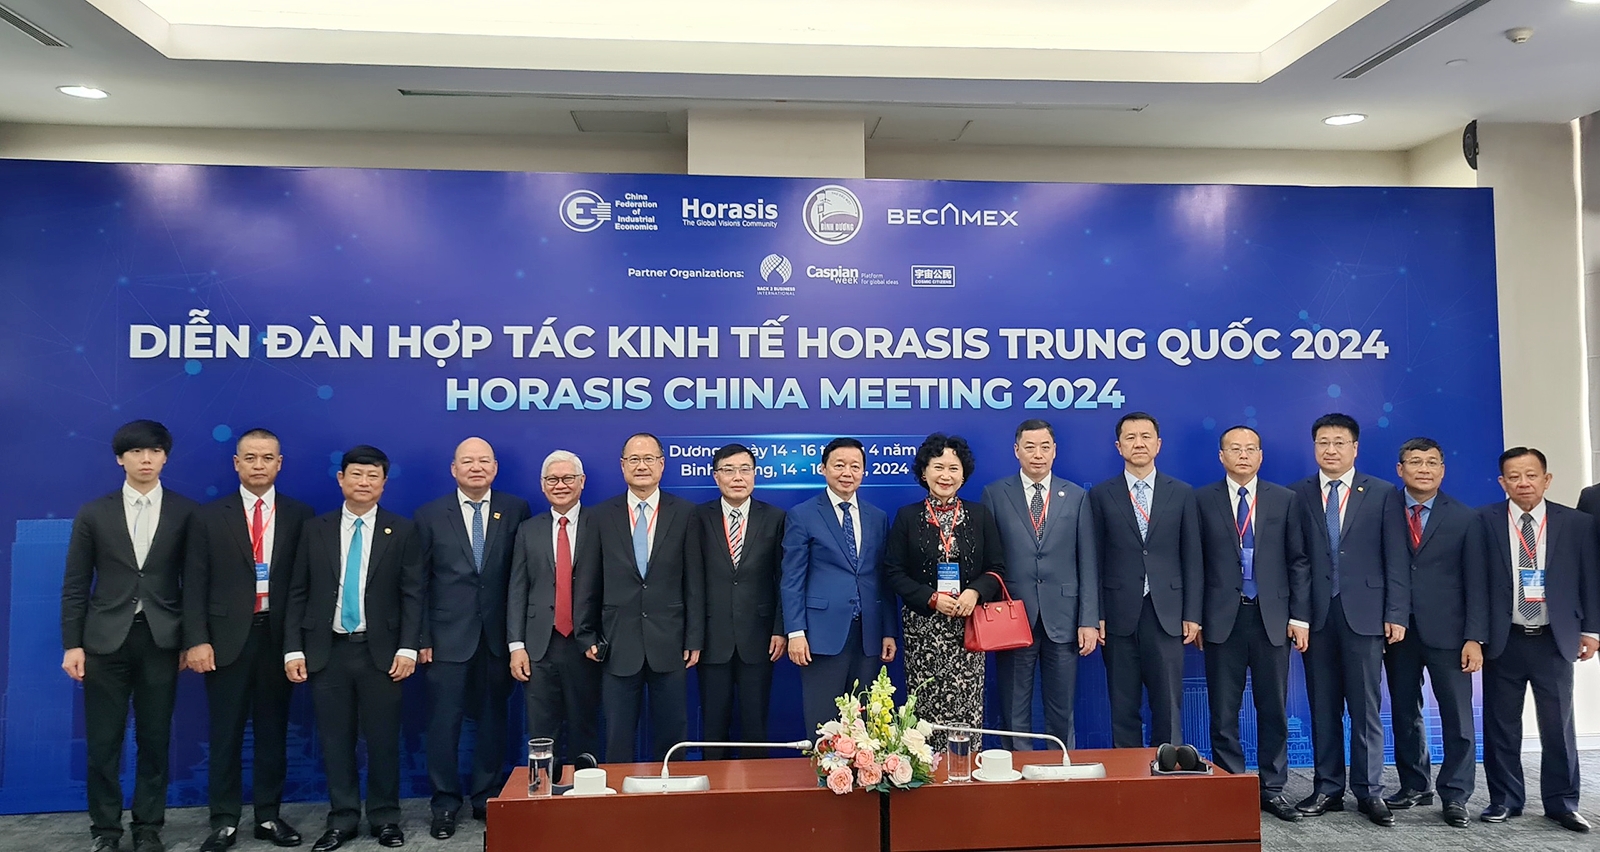 Diễn đàn Hợp tác Kinh tế Horasis Trung Quốc 2024 à cầu nối thúc đẩy trao đổi và hợp tác giữa các nhà lãnh đạo hàng đầu trong lĩnh vực kinh doanh, đổi mới sáng tạo và nâng cao năng lực quản trị